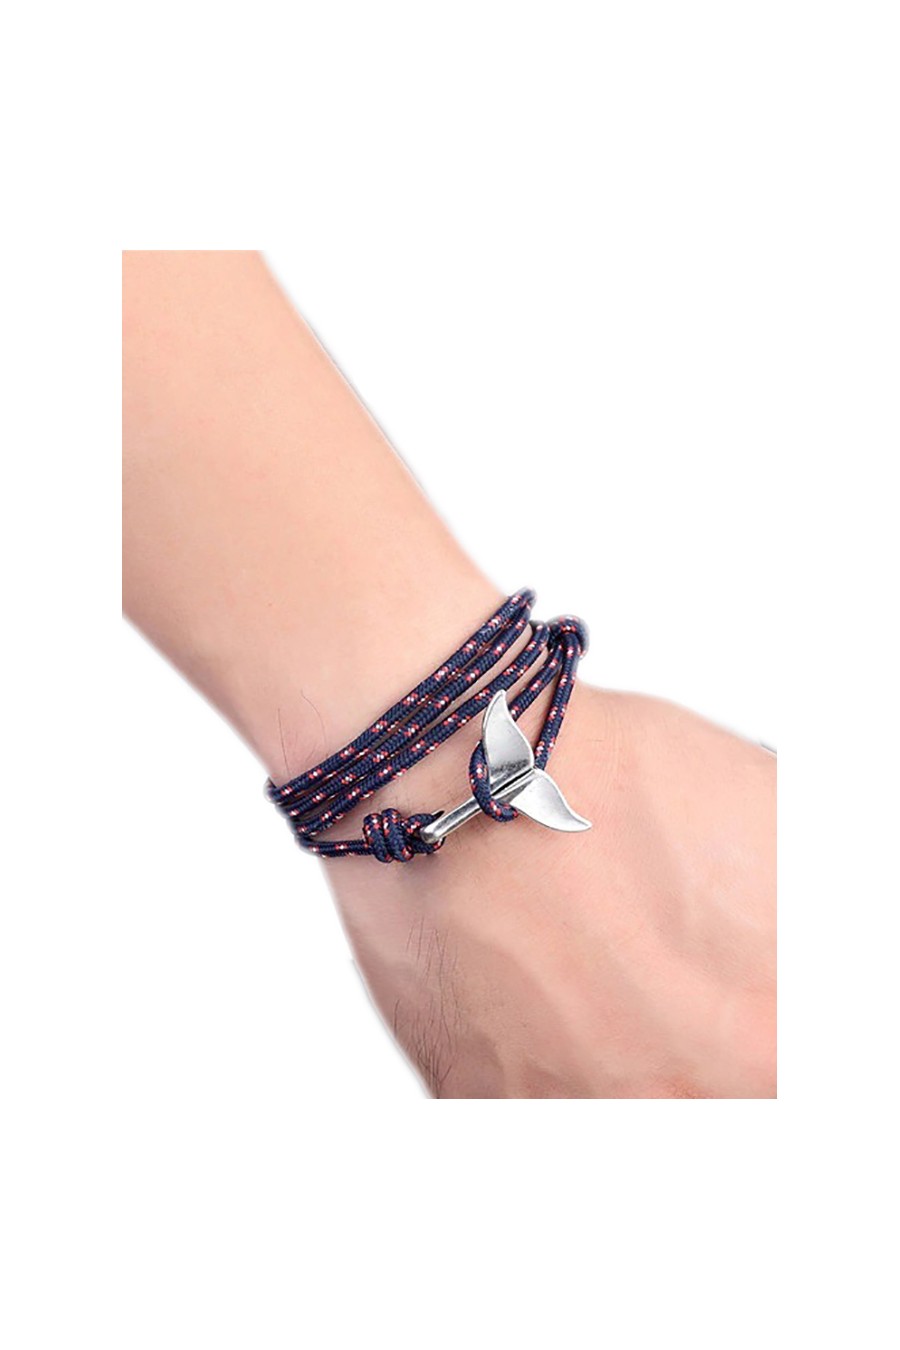 https://www.scuba-gifts.com/6985-large_default/paracord-whale-tail-bracelet.jpg